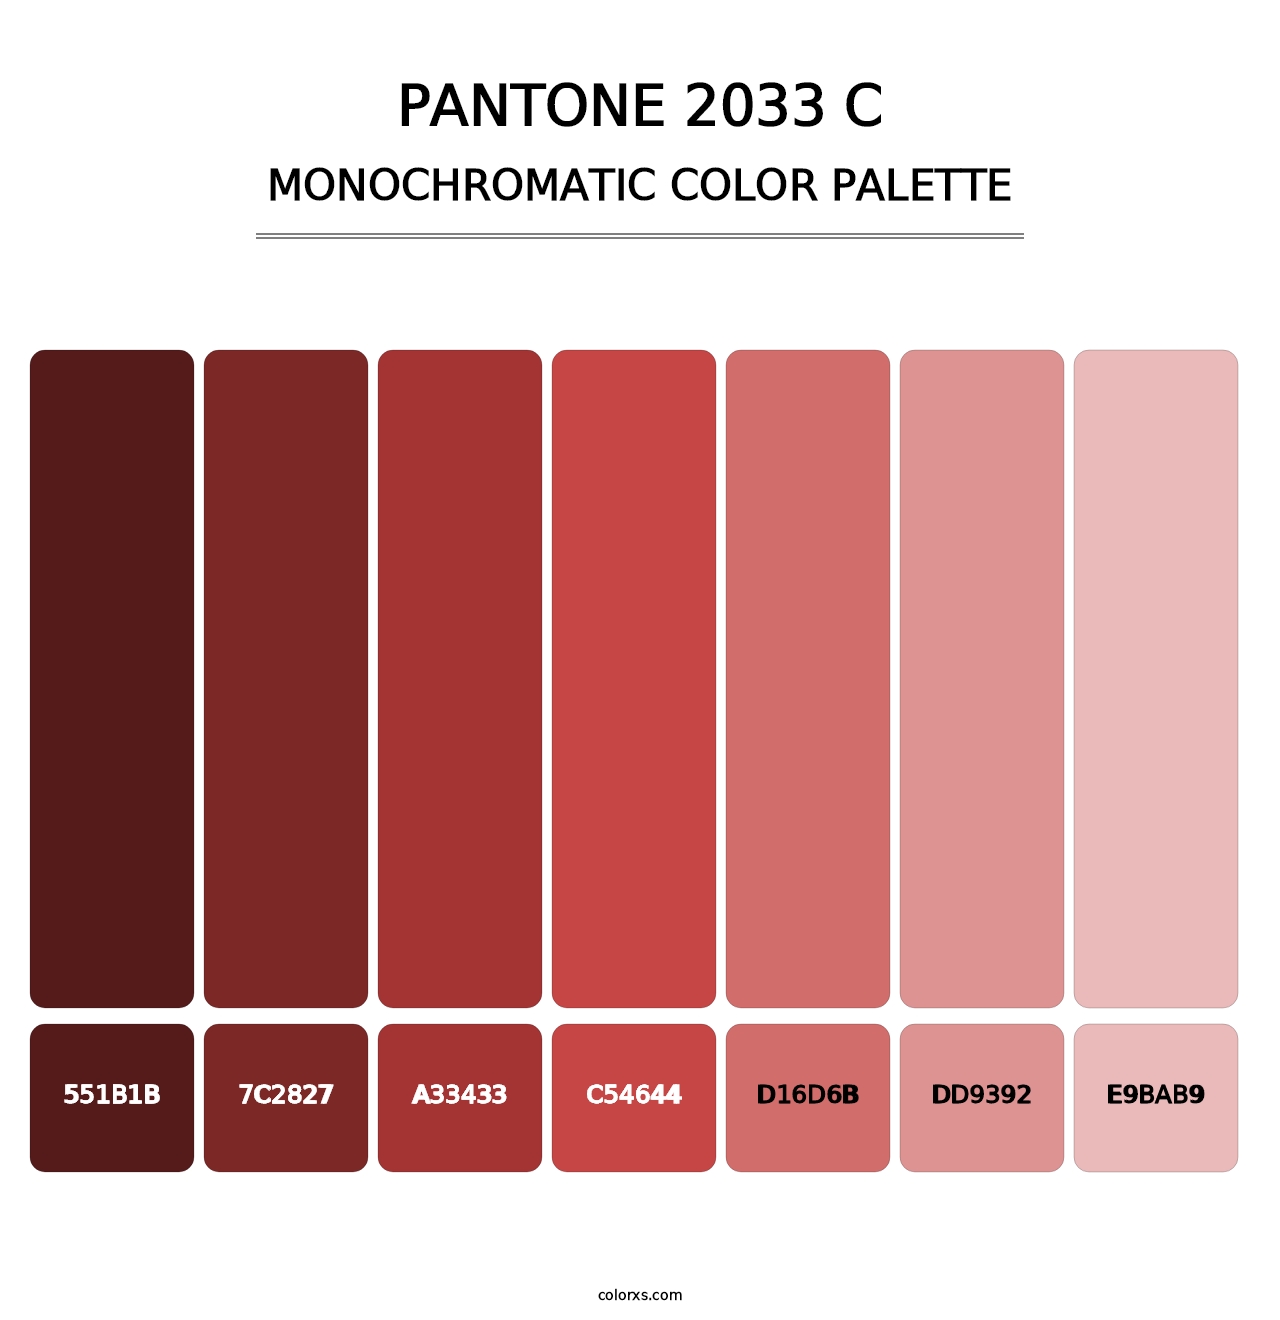 PANTONE 2033 C - Monochromatic Color Palette